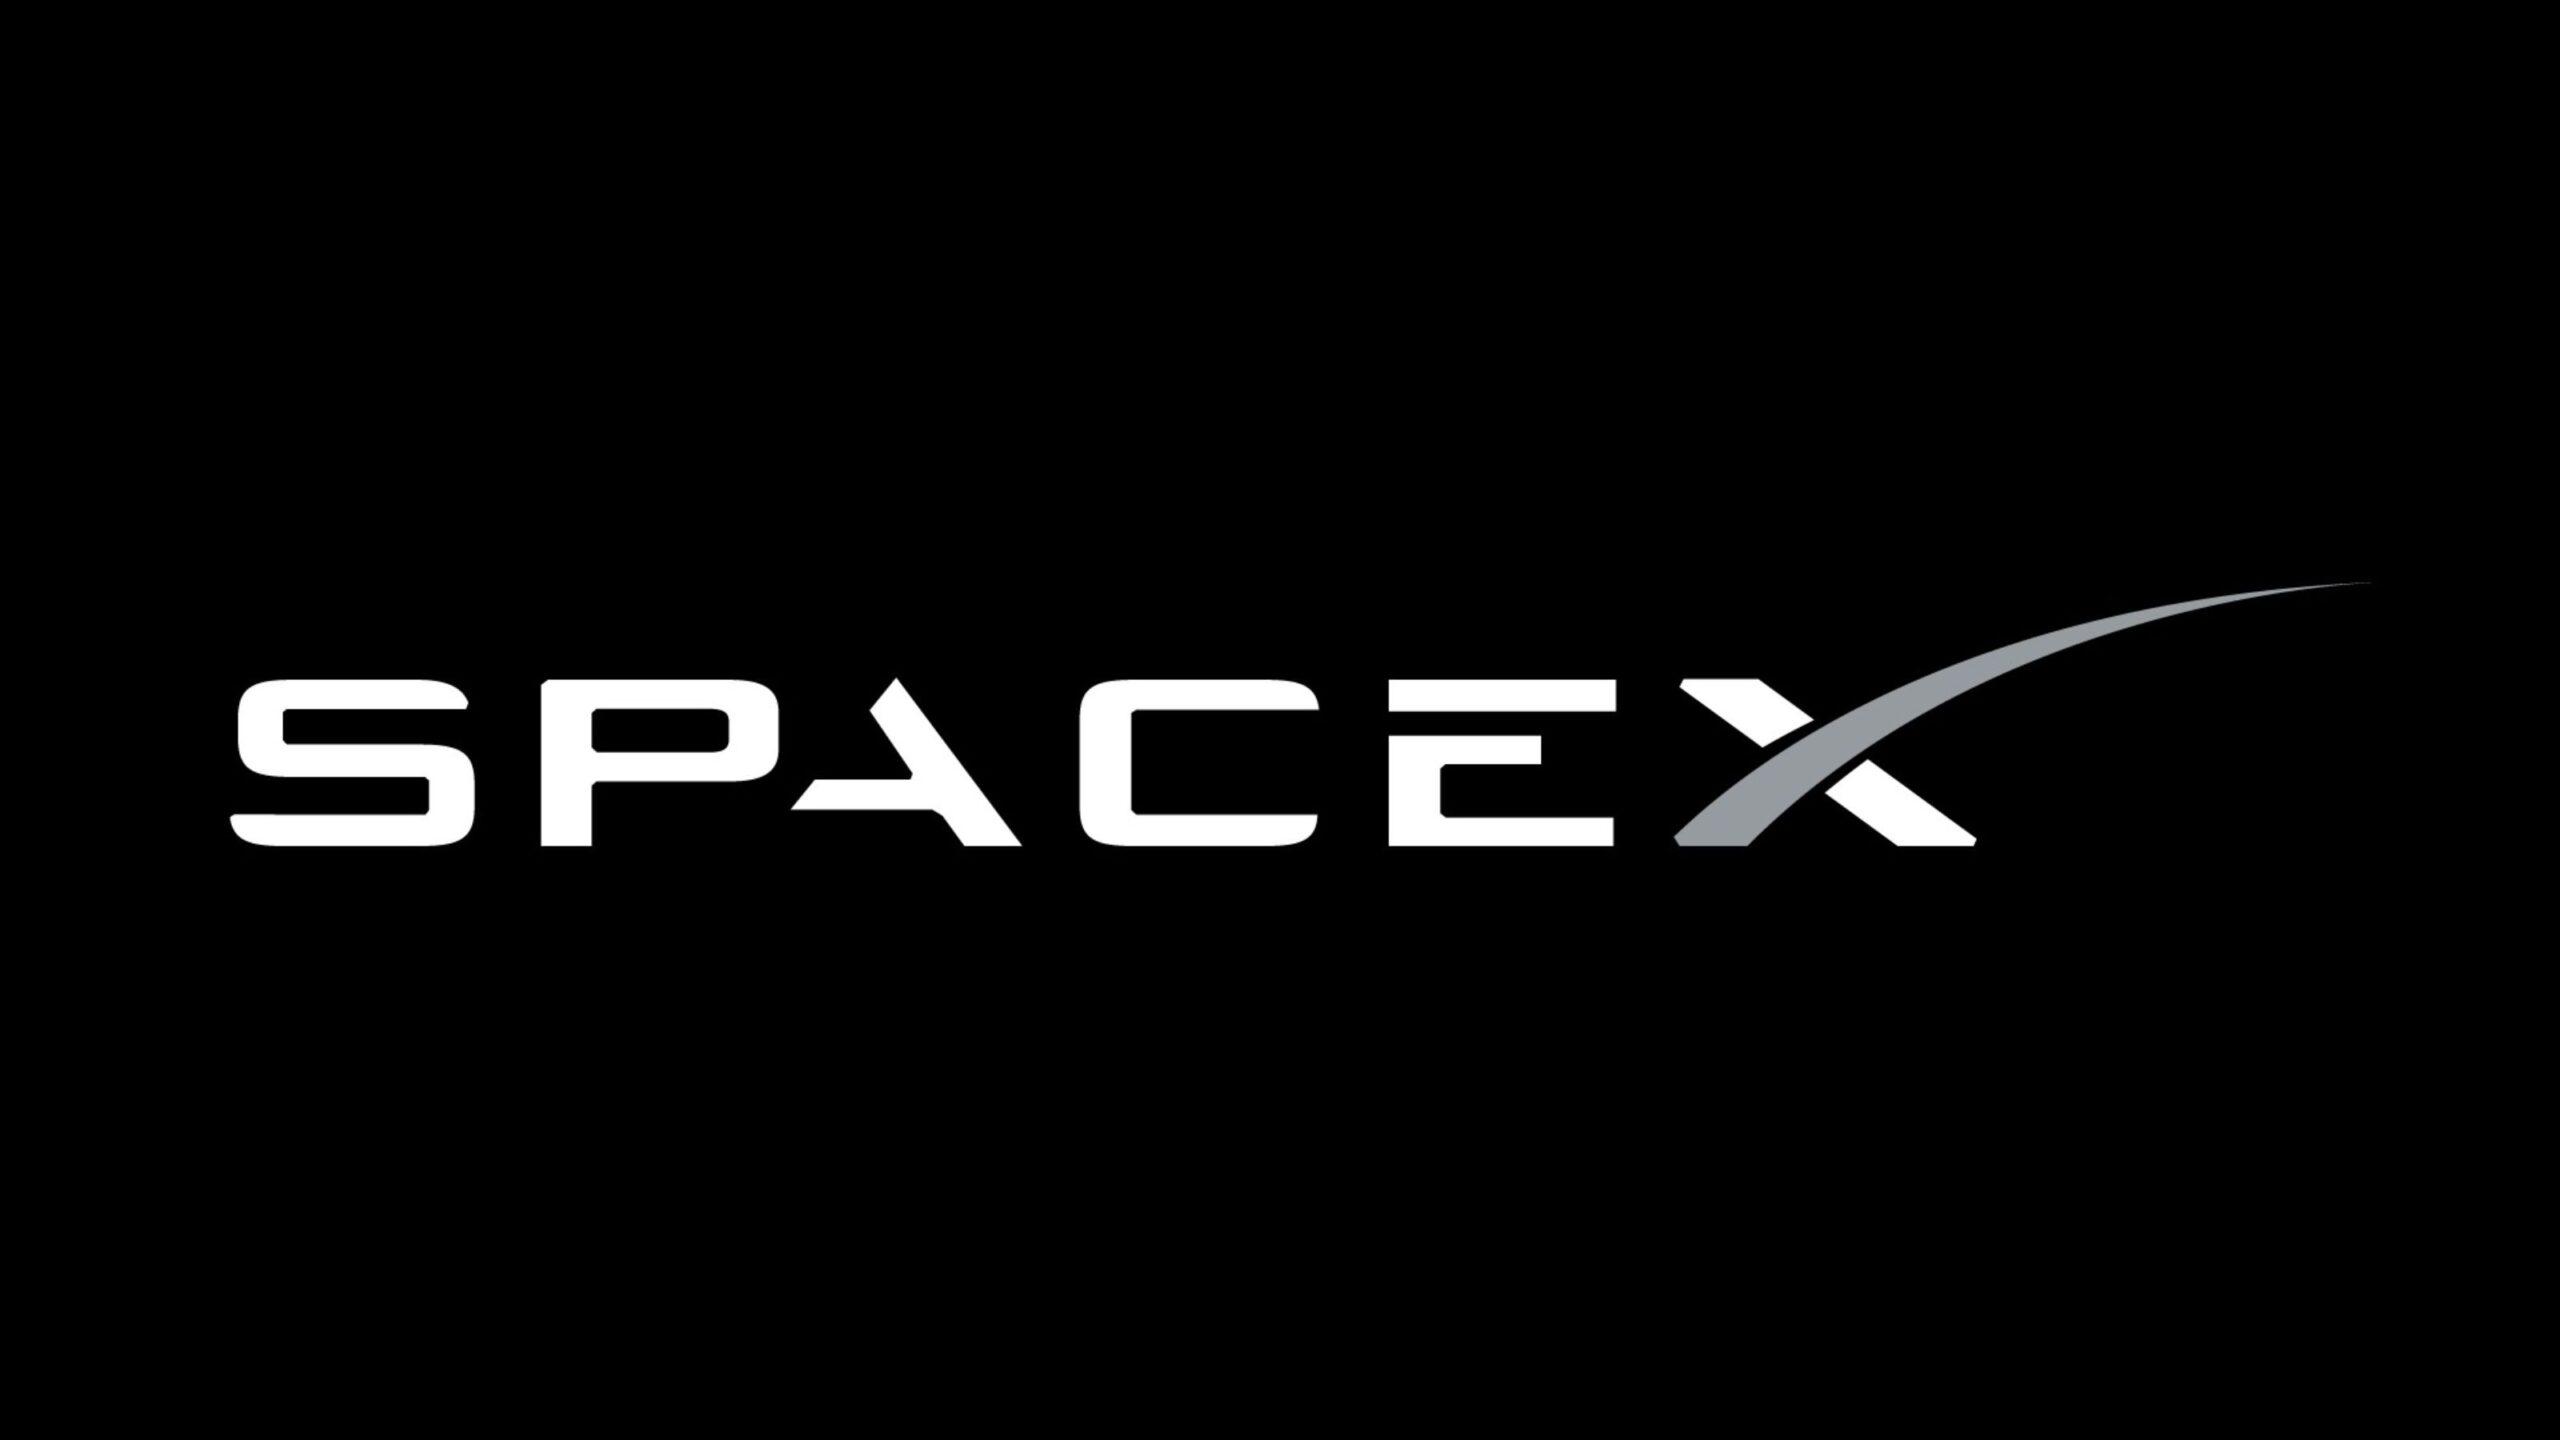 طموح استعمار الفضاء: SpaceX هي الرائدة حتى الآن 4